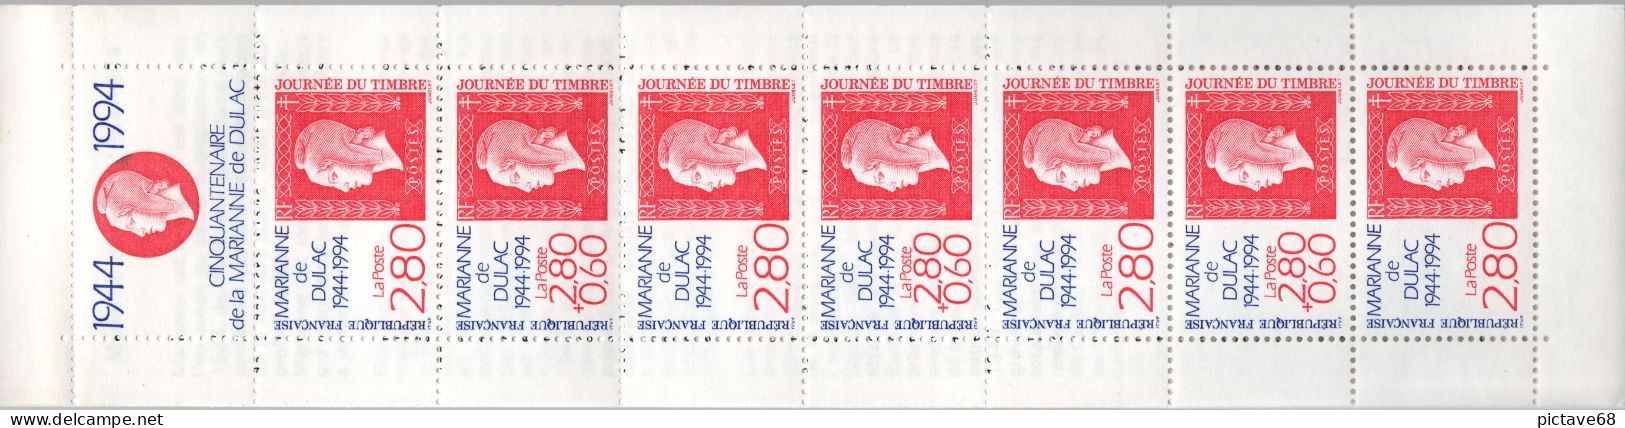 FRANCE / CARNETS JOURNEE & FETE DU TIMBRE / N° BC 2865  ( 1994 ) - Tag Der Briefmarke